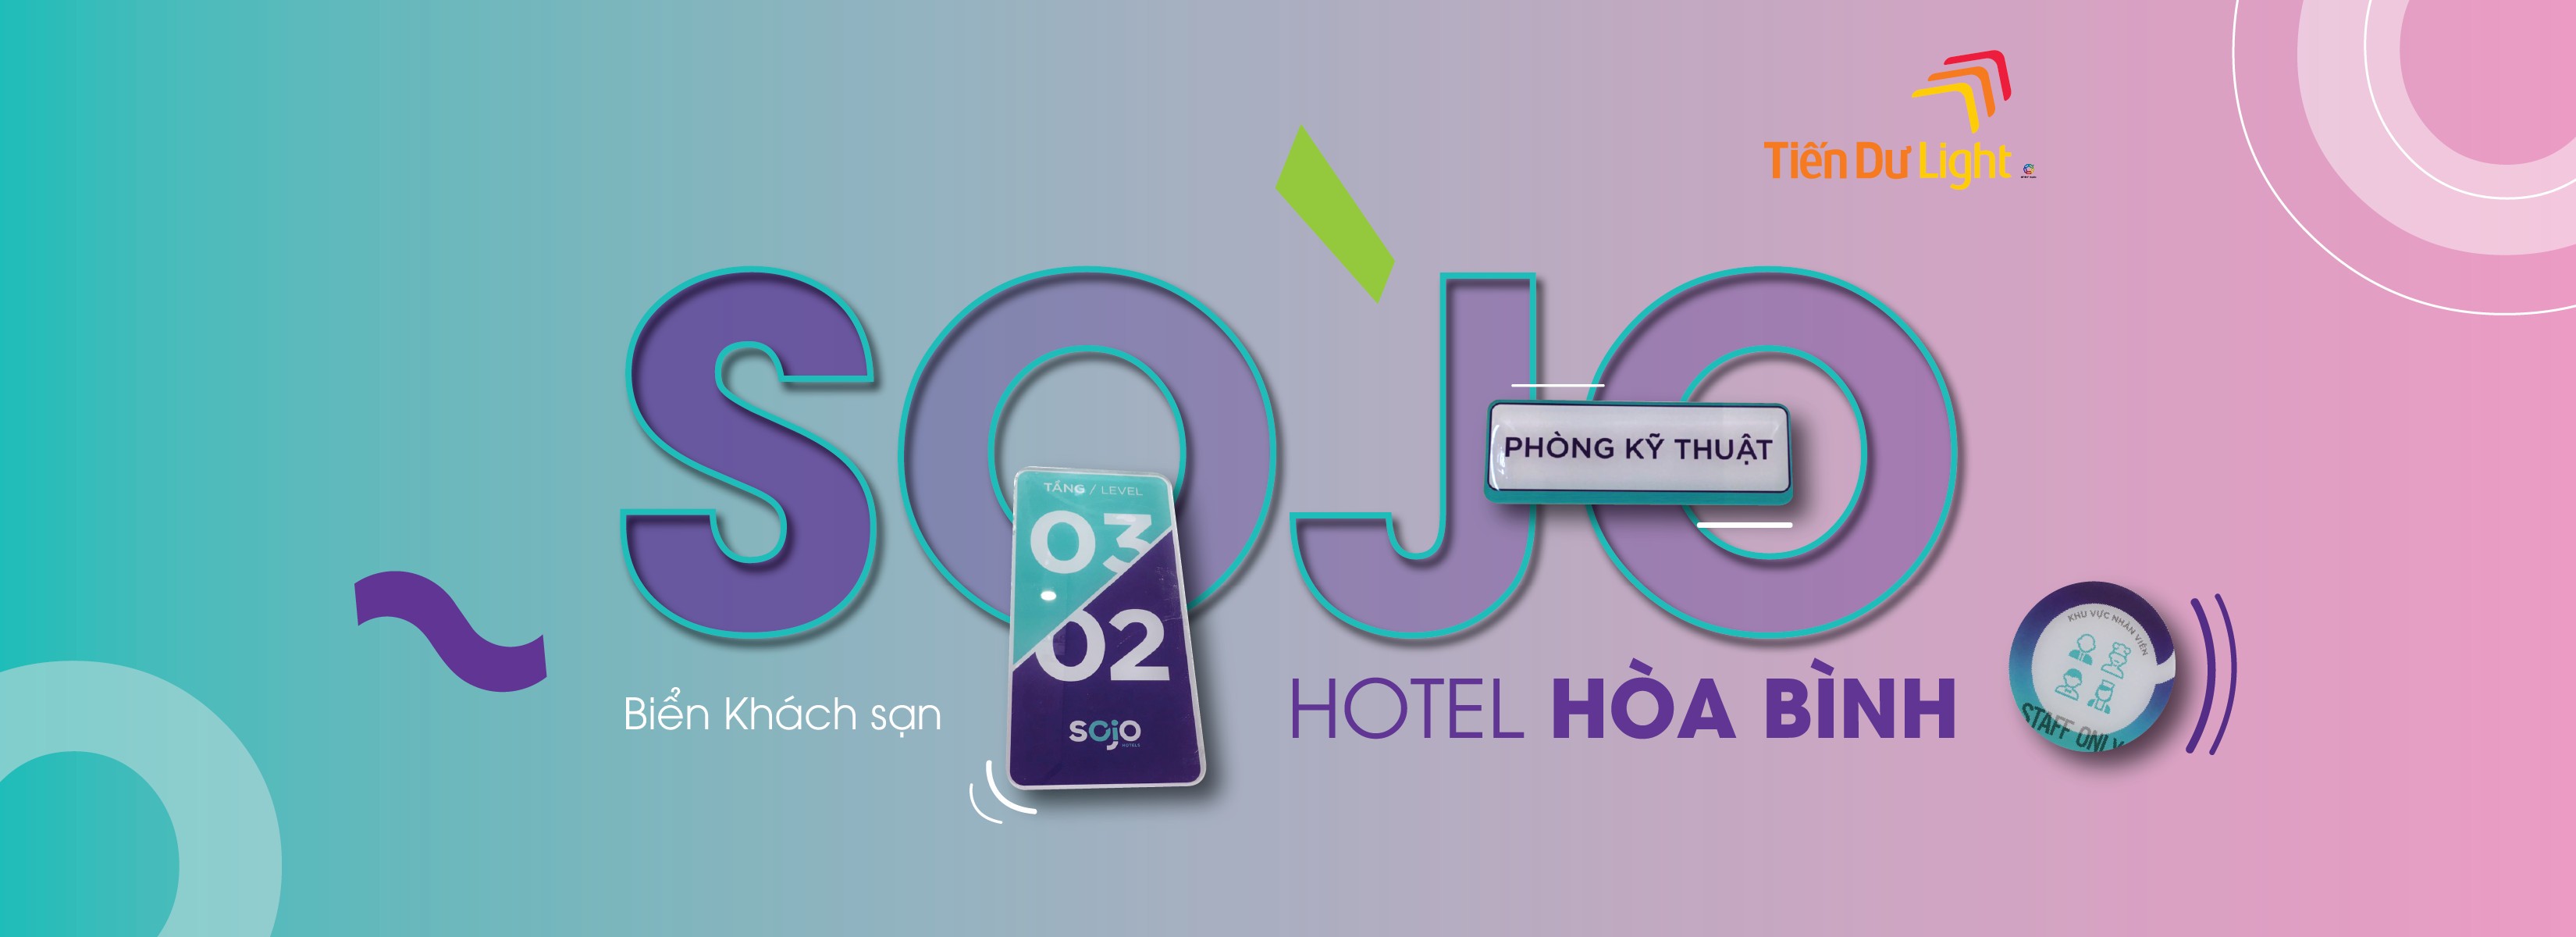 Hoàn thành biển quảng cáo cho khách sạn thuận ích Sojo Hòa Bình